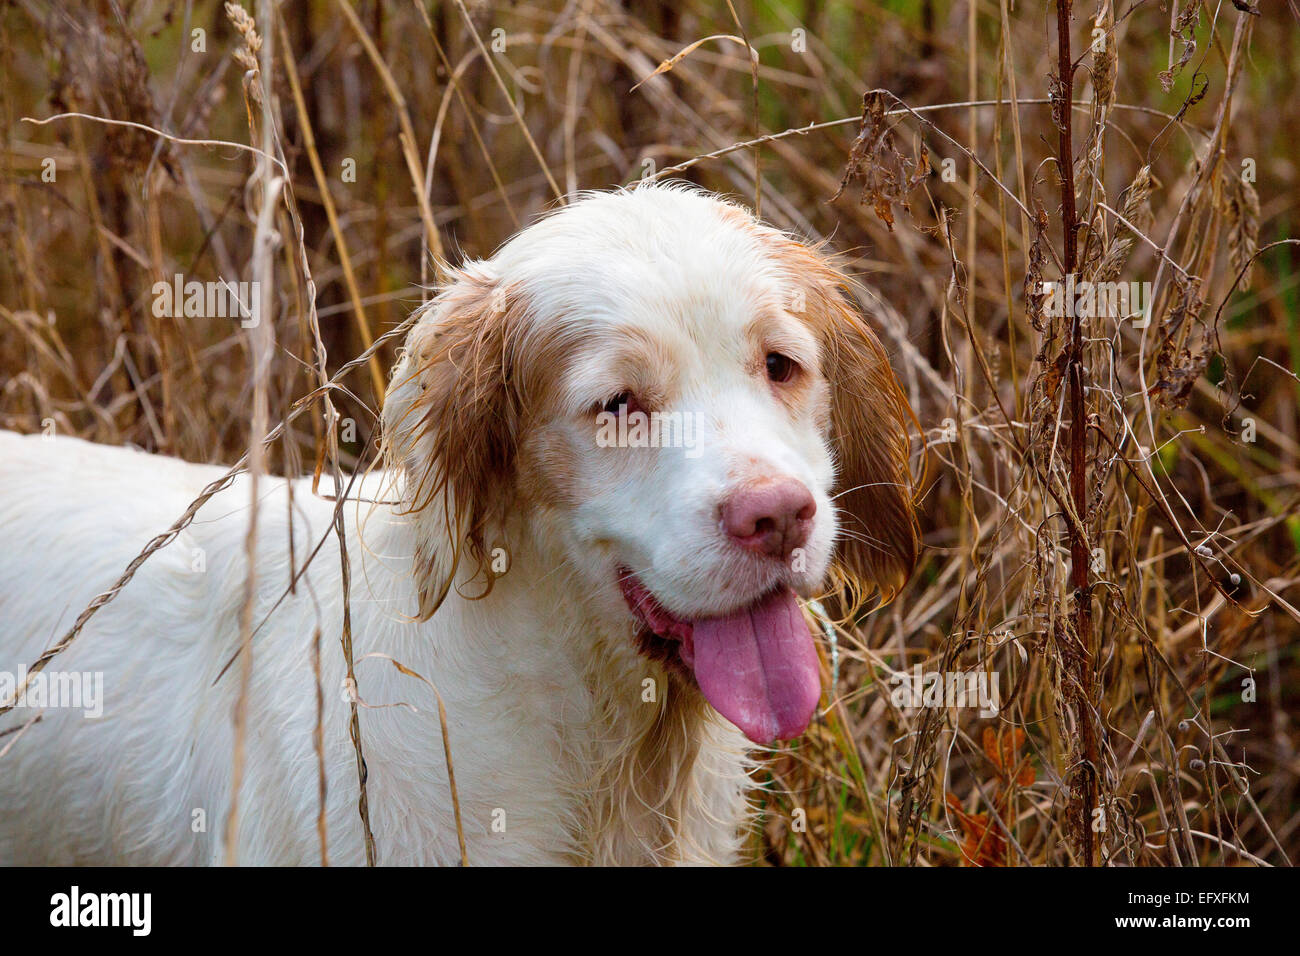 Portrait de clumber spaniel chien avec la langue dans le marais, Oxfordshire, Angleterre Banque D'Images